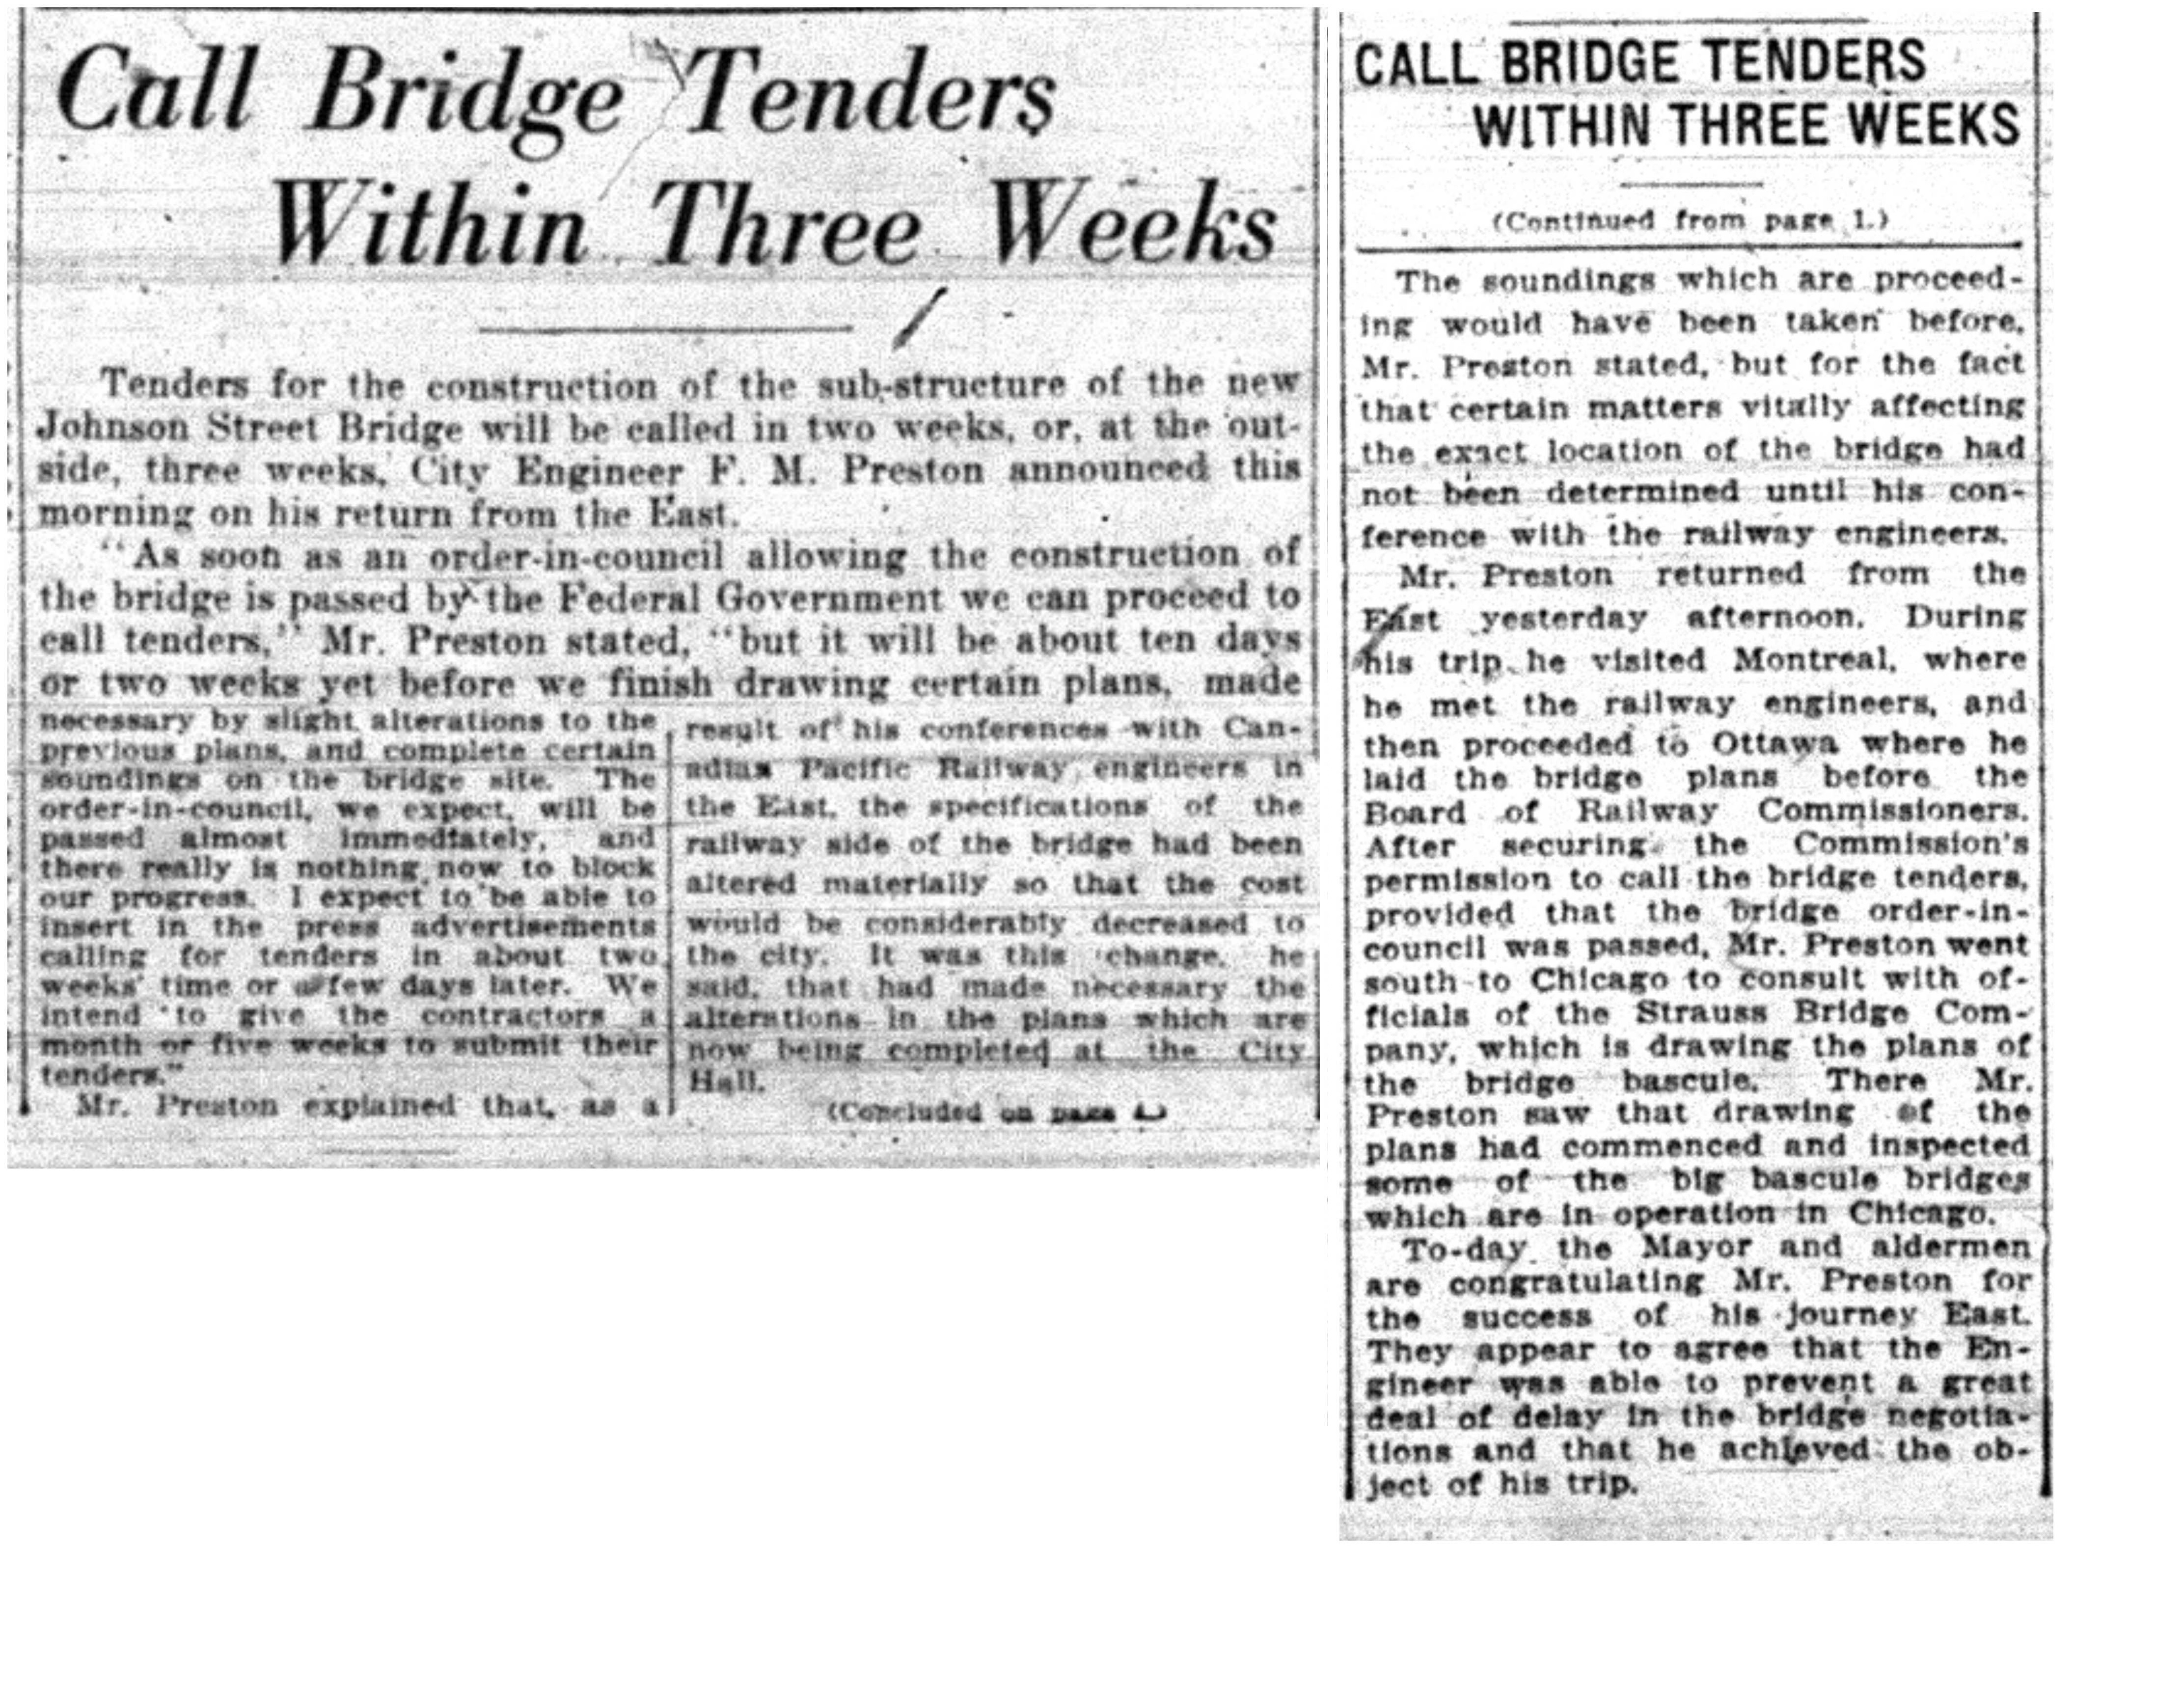 "Call Bridge Tenders Within Three Weeks"